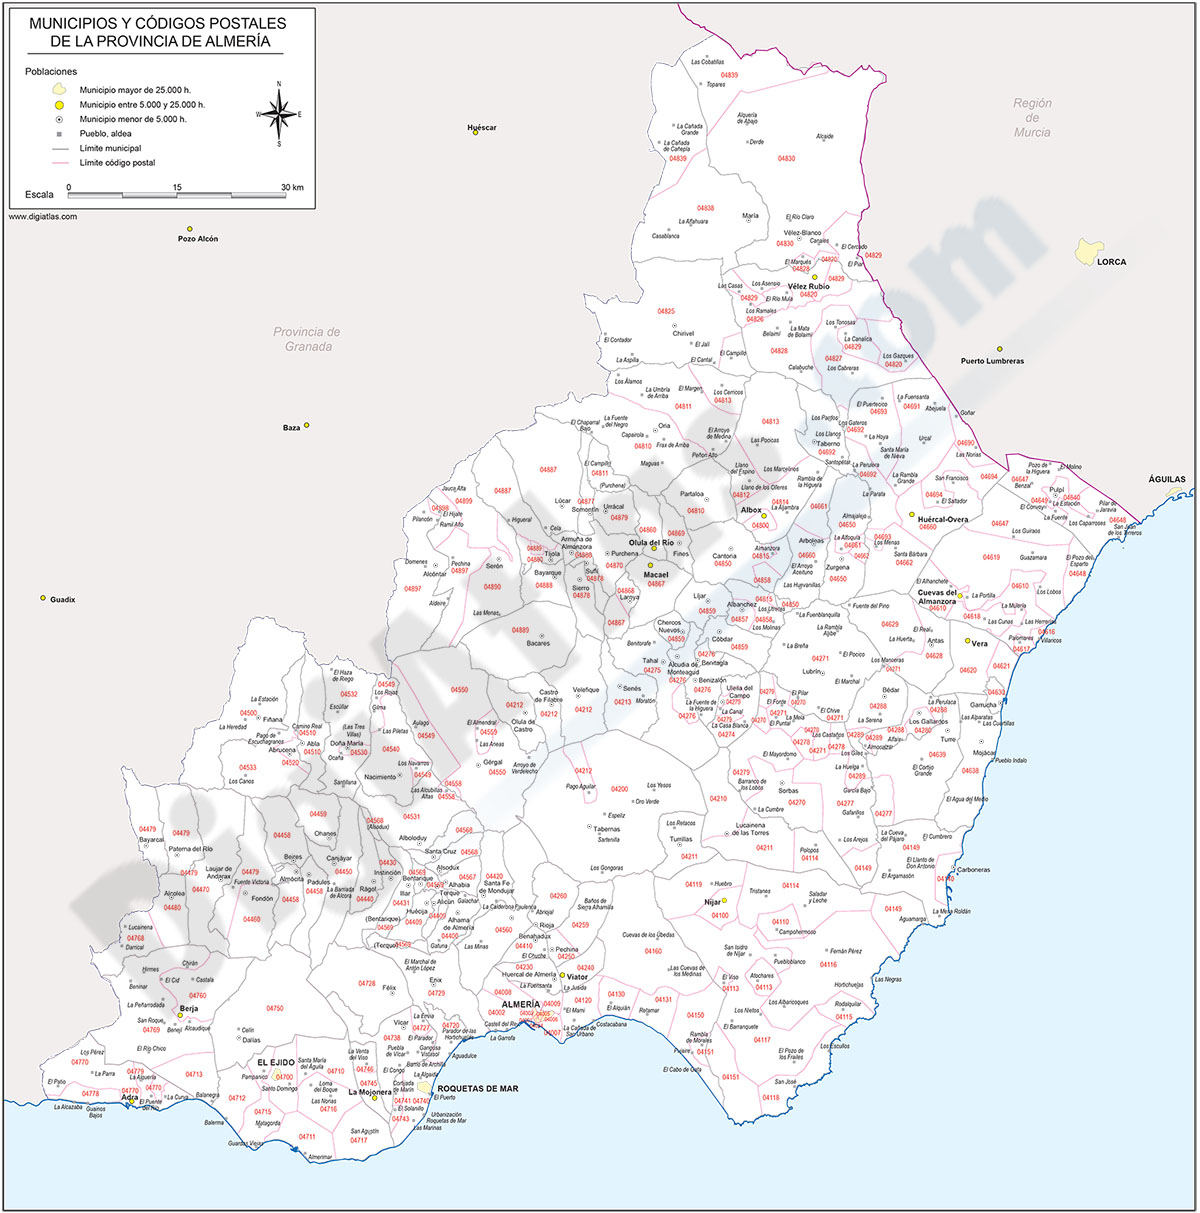 Almería - mapa provincial con municipios y Códigos Postales